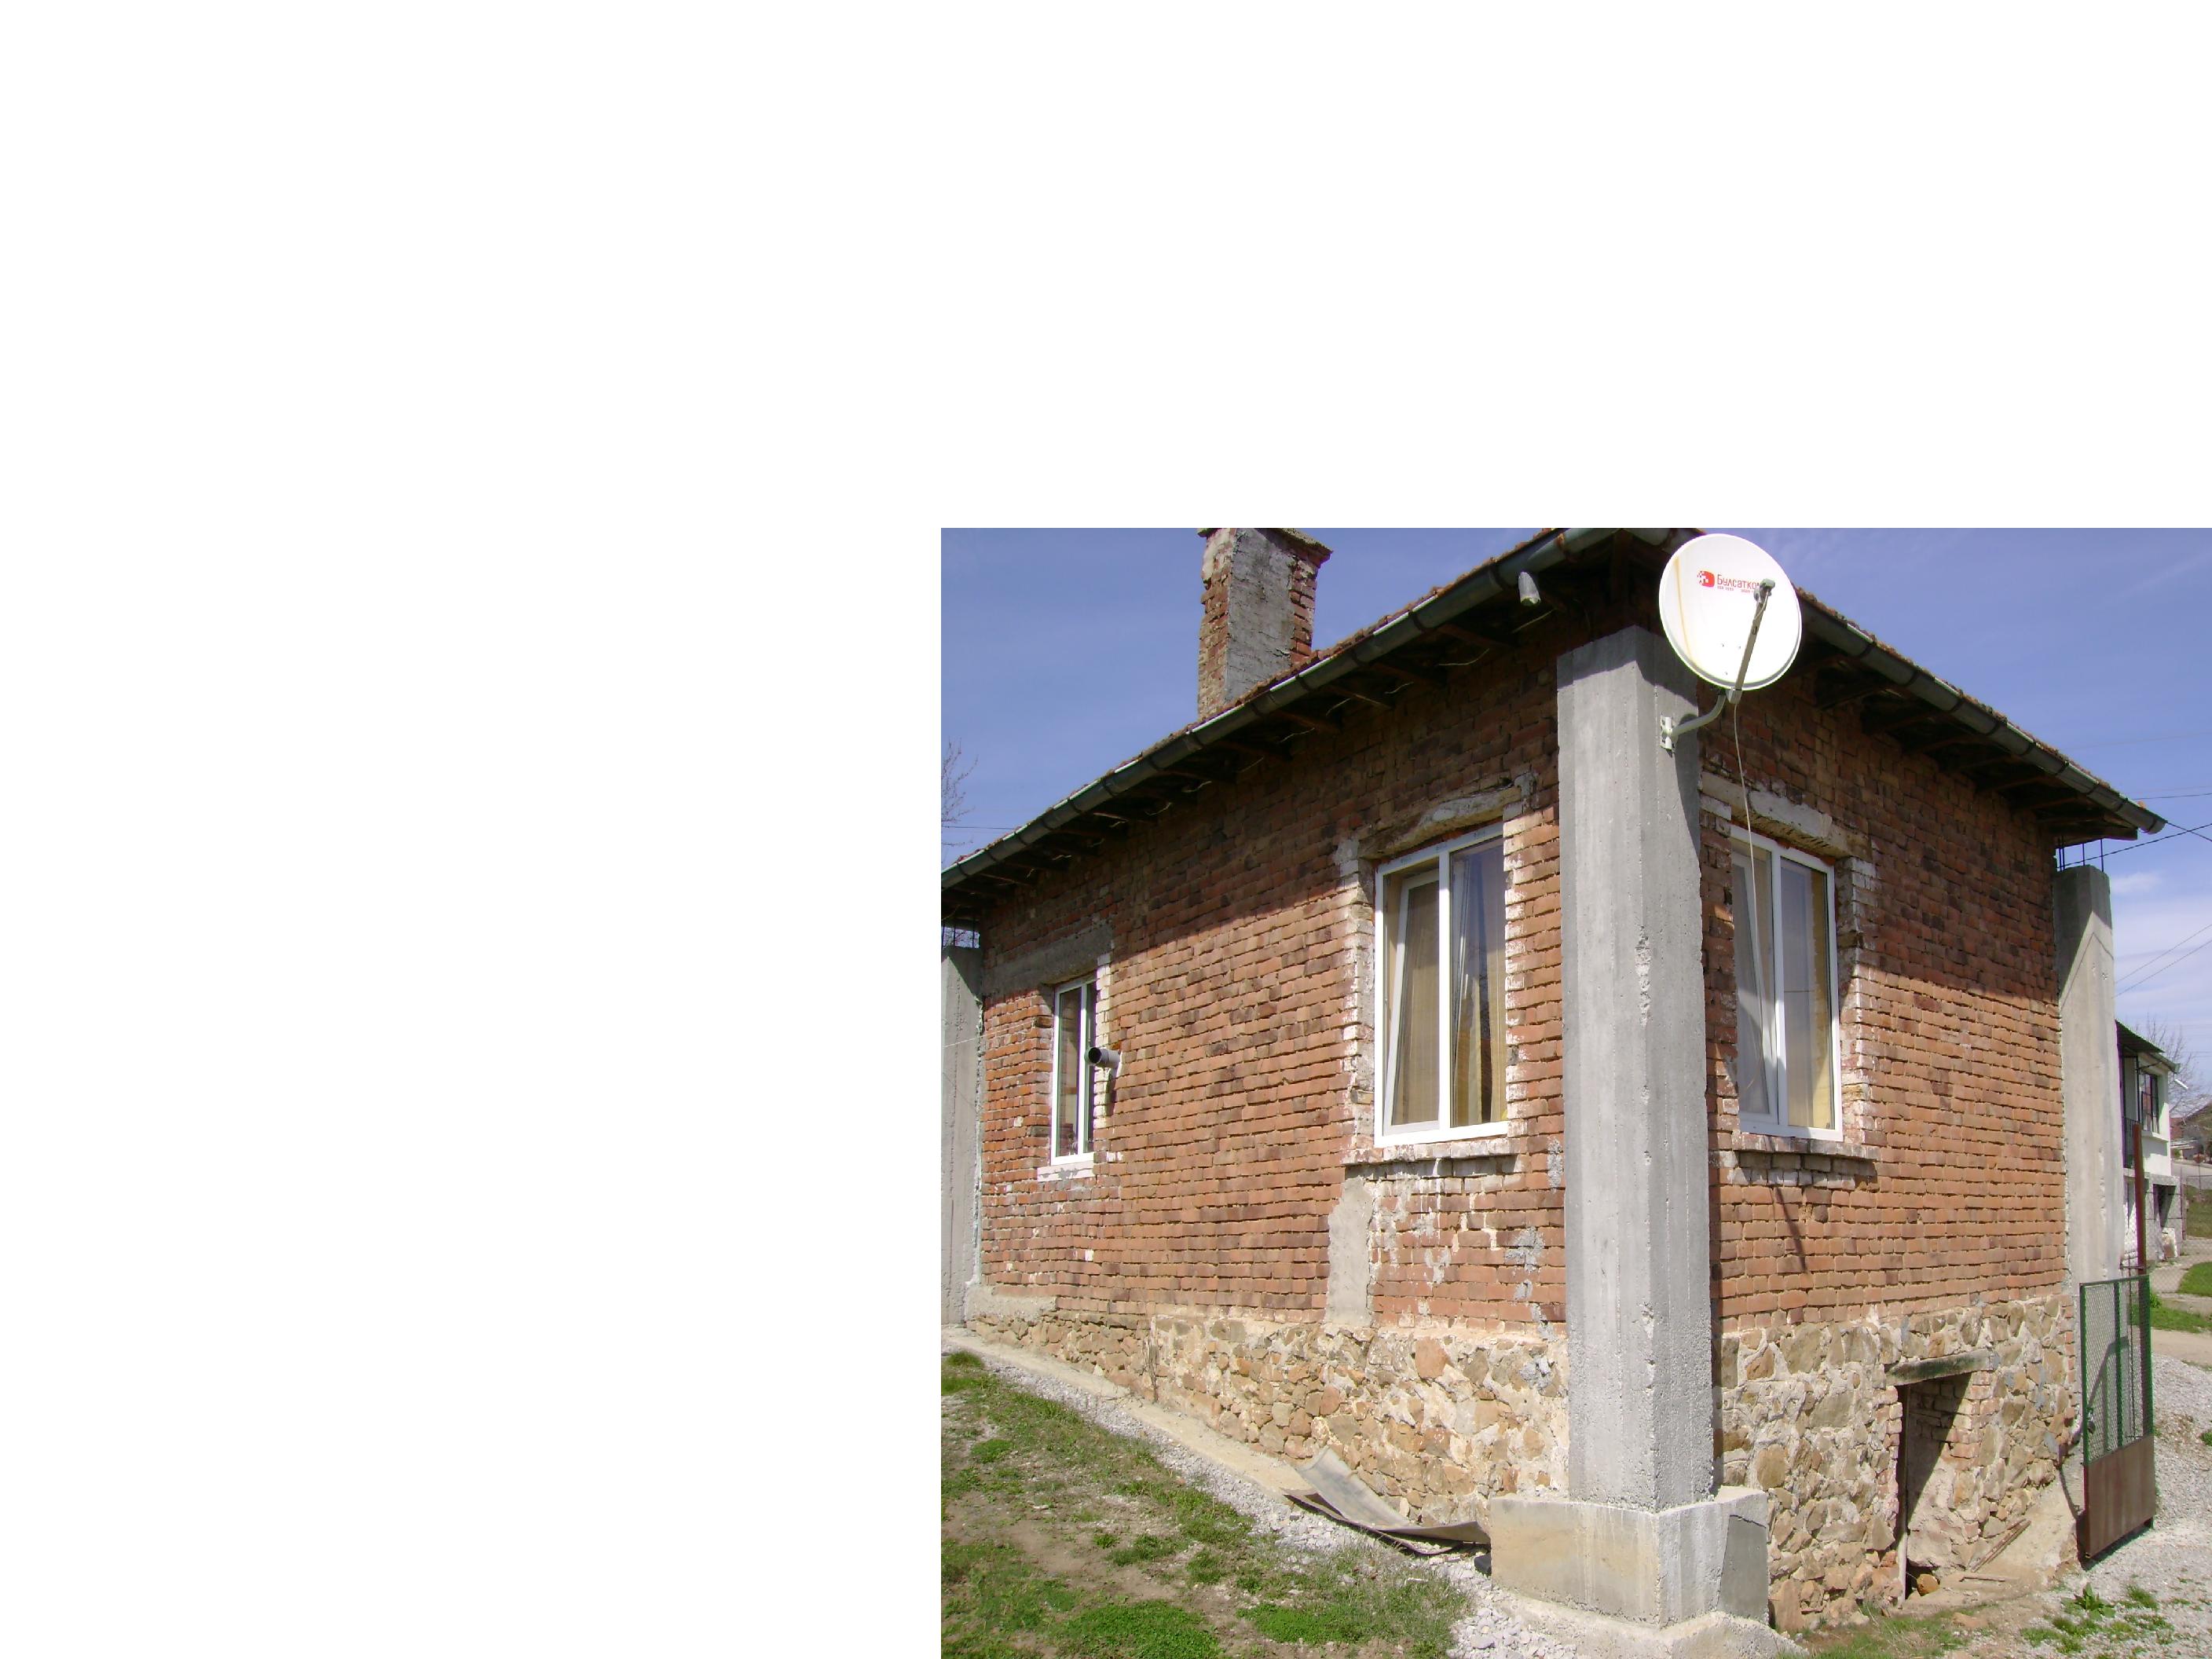 Къща, селскостопански постройки и дворно място на 23 км от София - целогодишен достъп